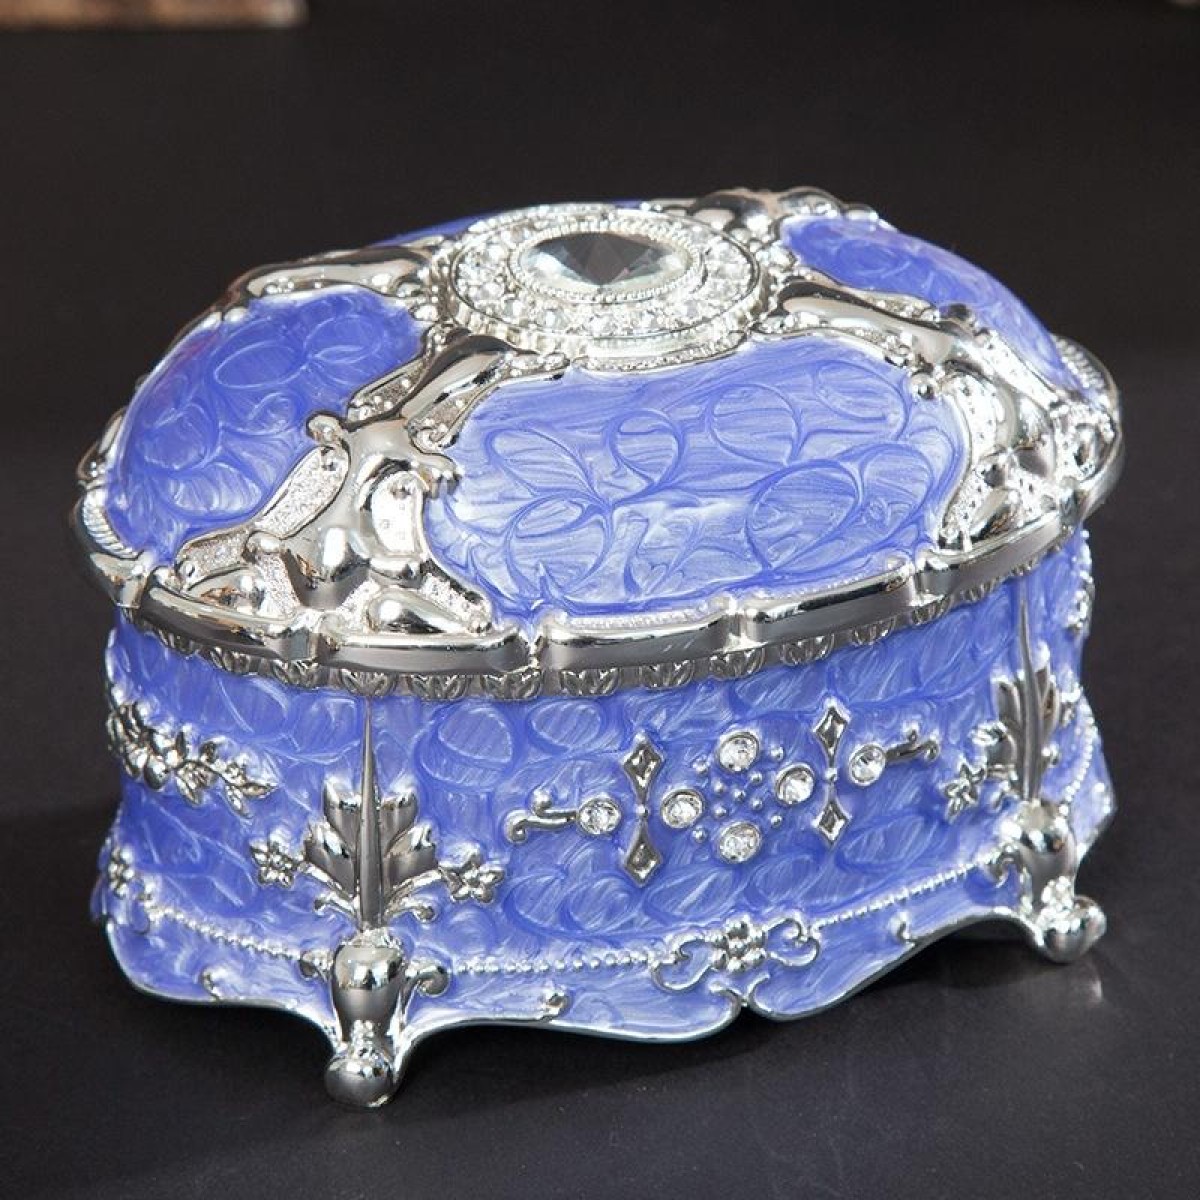 Metal Oval Diamond Jewelry Storage Box Birthday Wedding Gift, Size: 11x7.5x7cm(Silver Edge Purple)